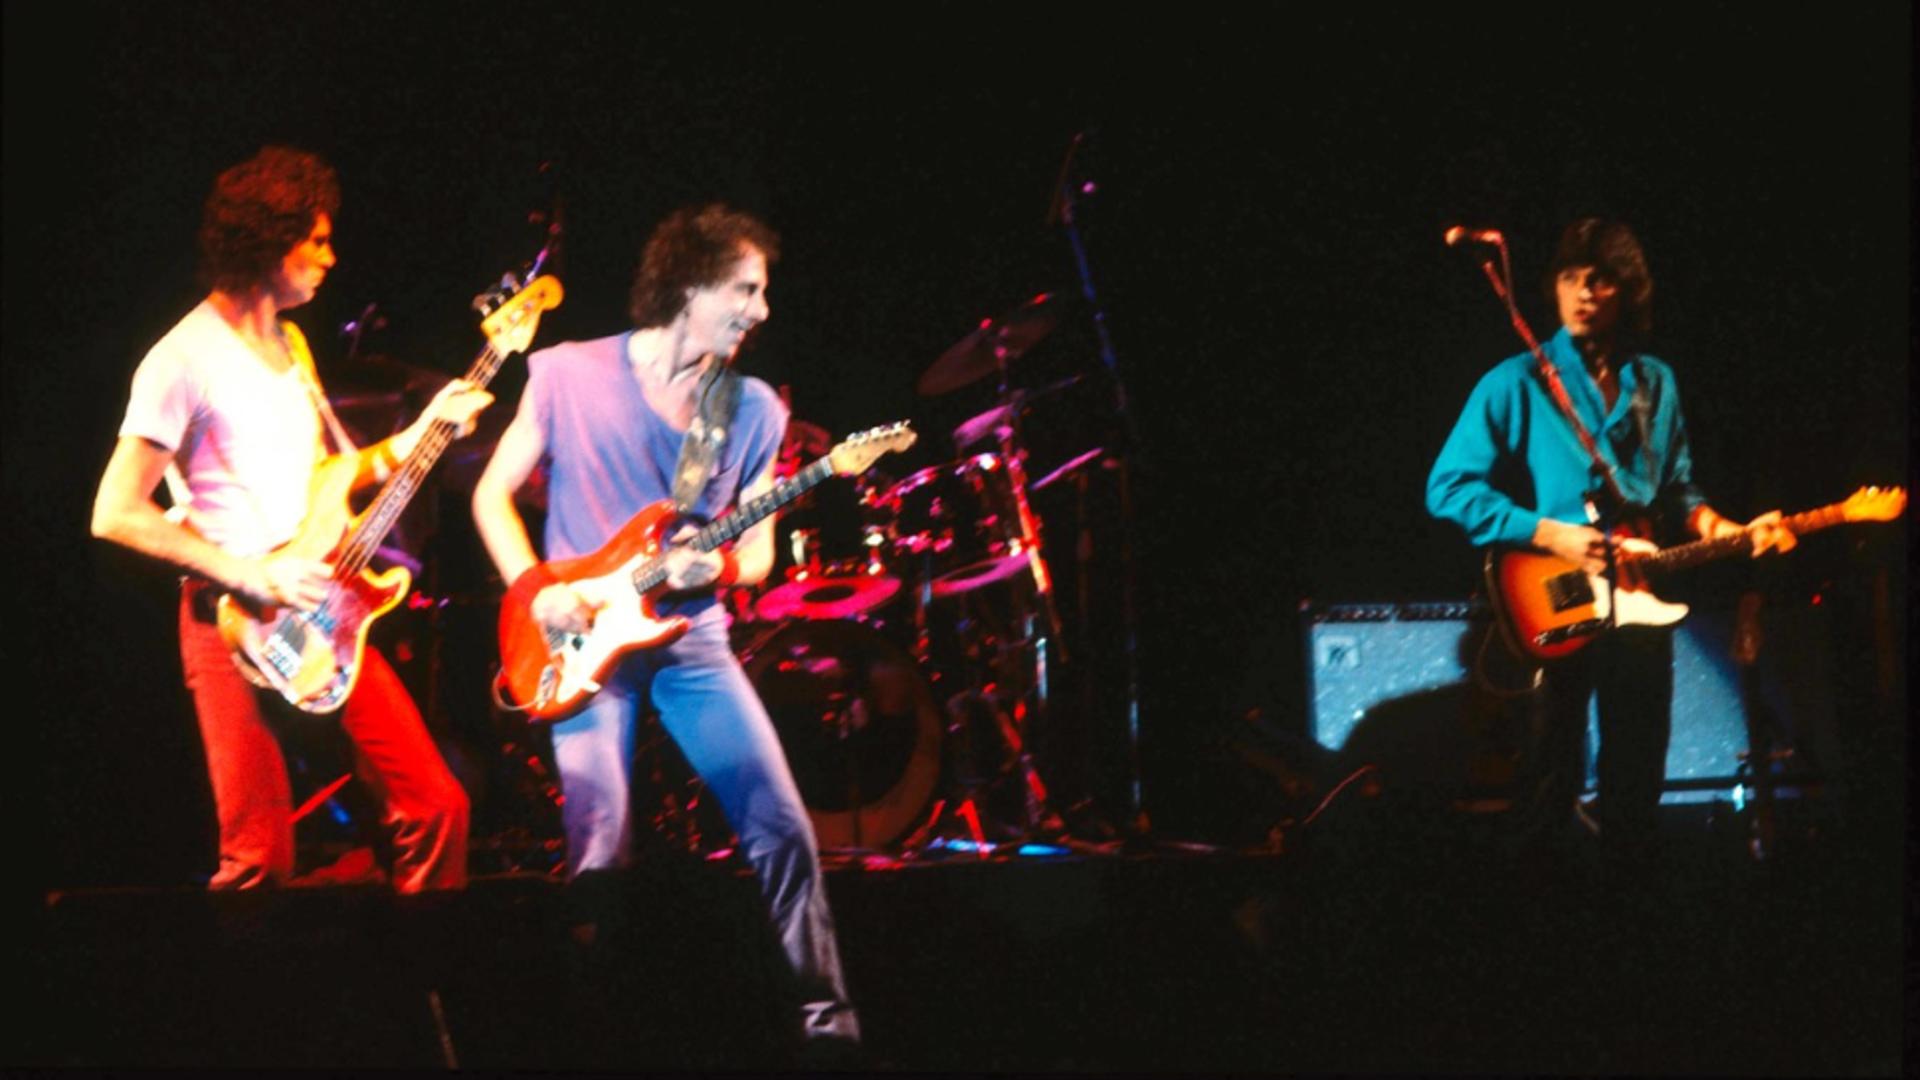 Doliu în lumea muzicii! Fostul chitarist al legendarei trupe rock Dire Straits a murit. Jack Sonni avea 68 de ani